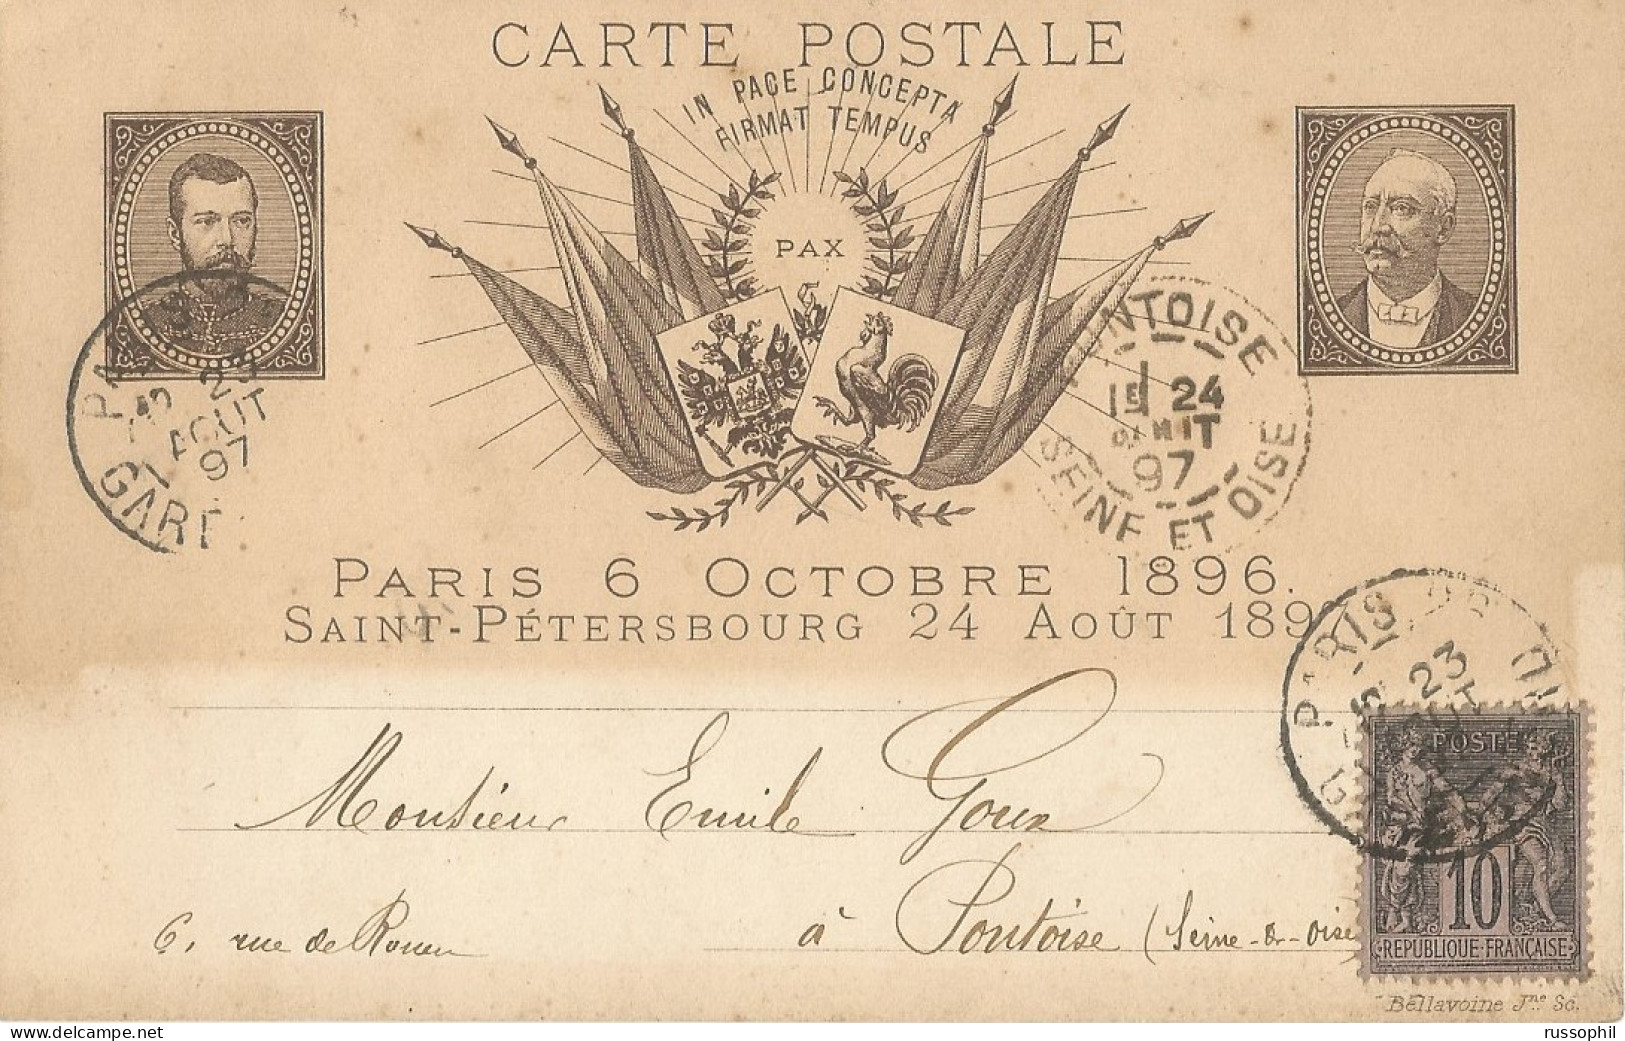 FRANCO RUSSIAN ALLIANCE - PARIS 6 OCTOBRE 1896 SAINT PETERSBOURG 24 AOUT 1897 - ED BELLAVOINE - 1897 - Ereignisse